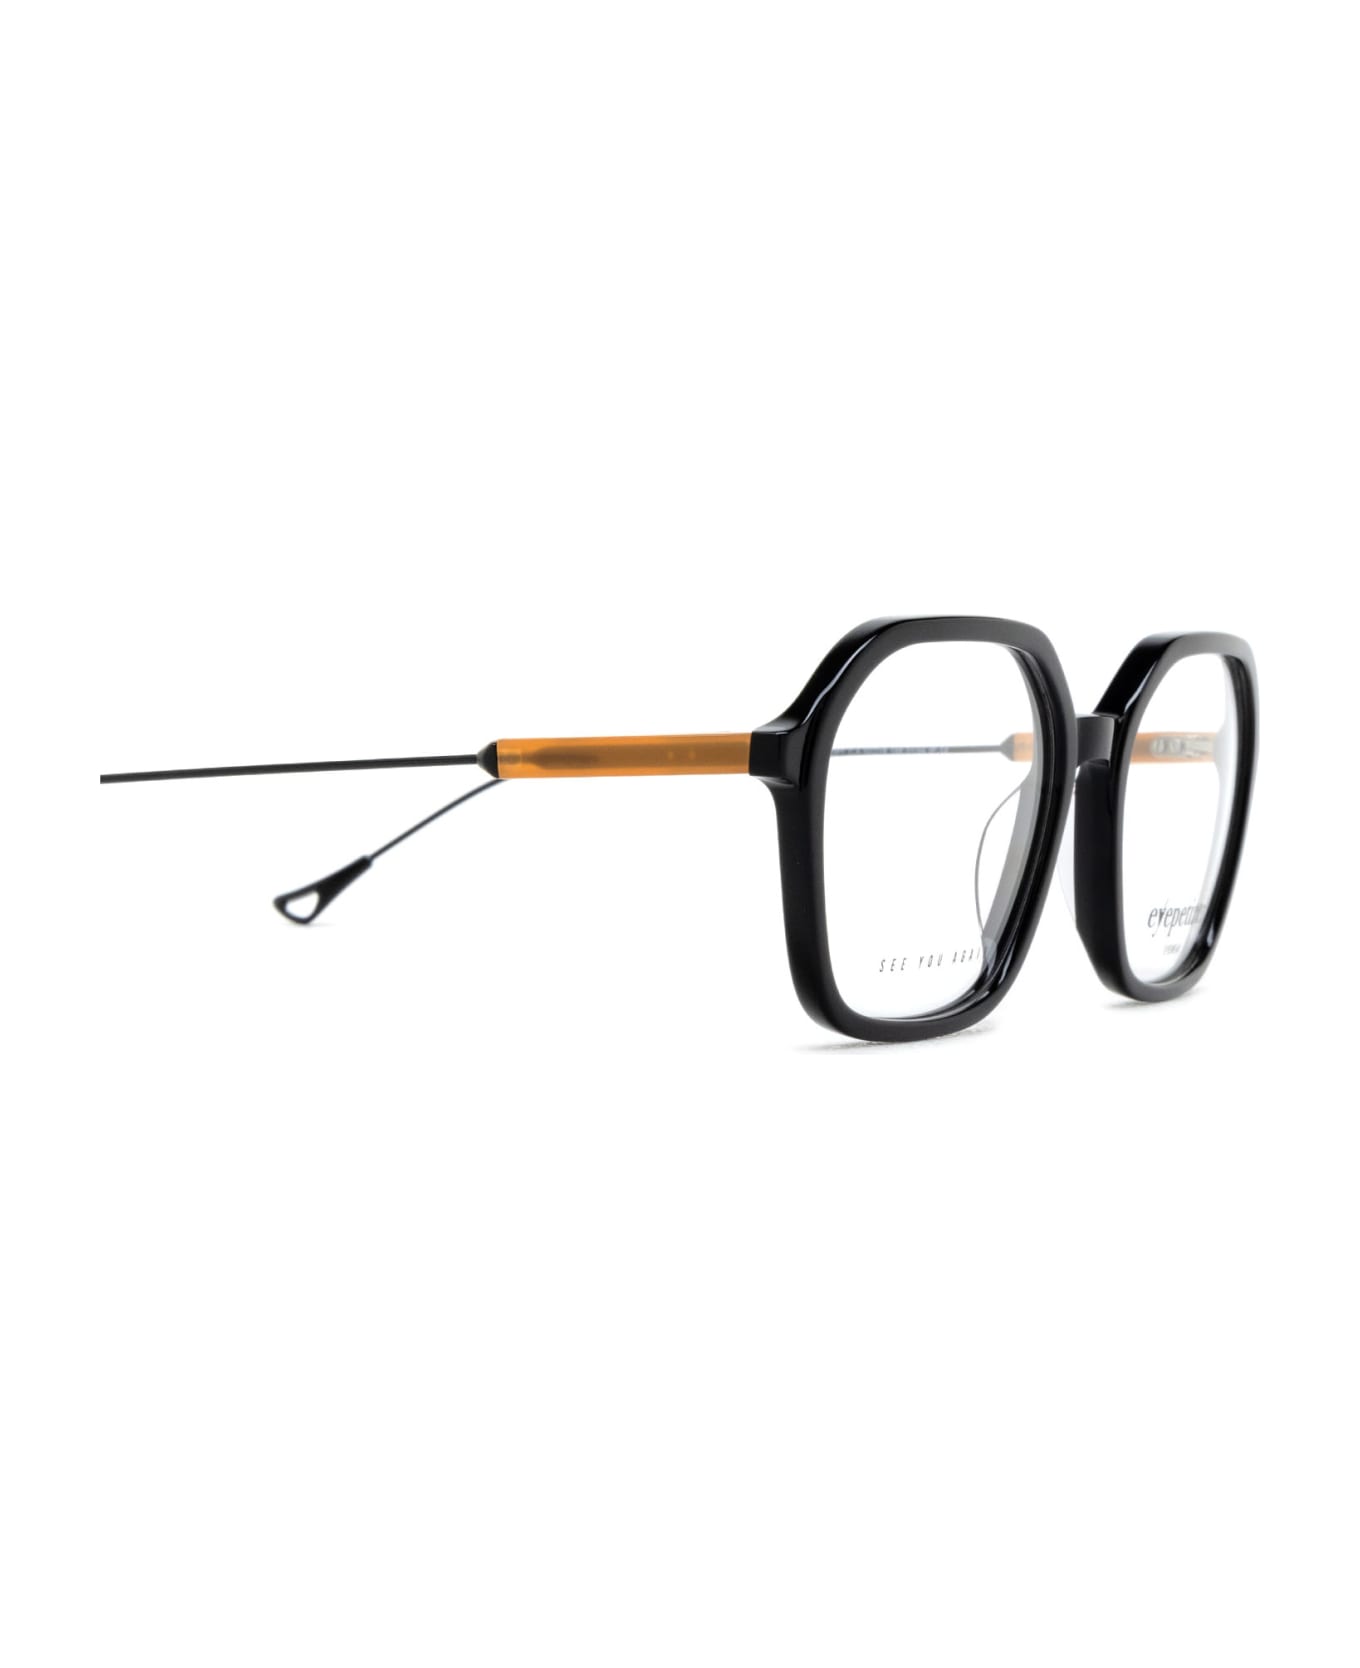 Eyepetizer Aida Opt Black Glasses - Black アイウェア